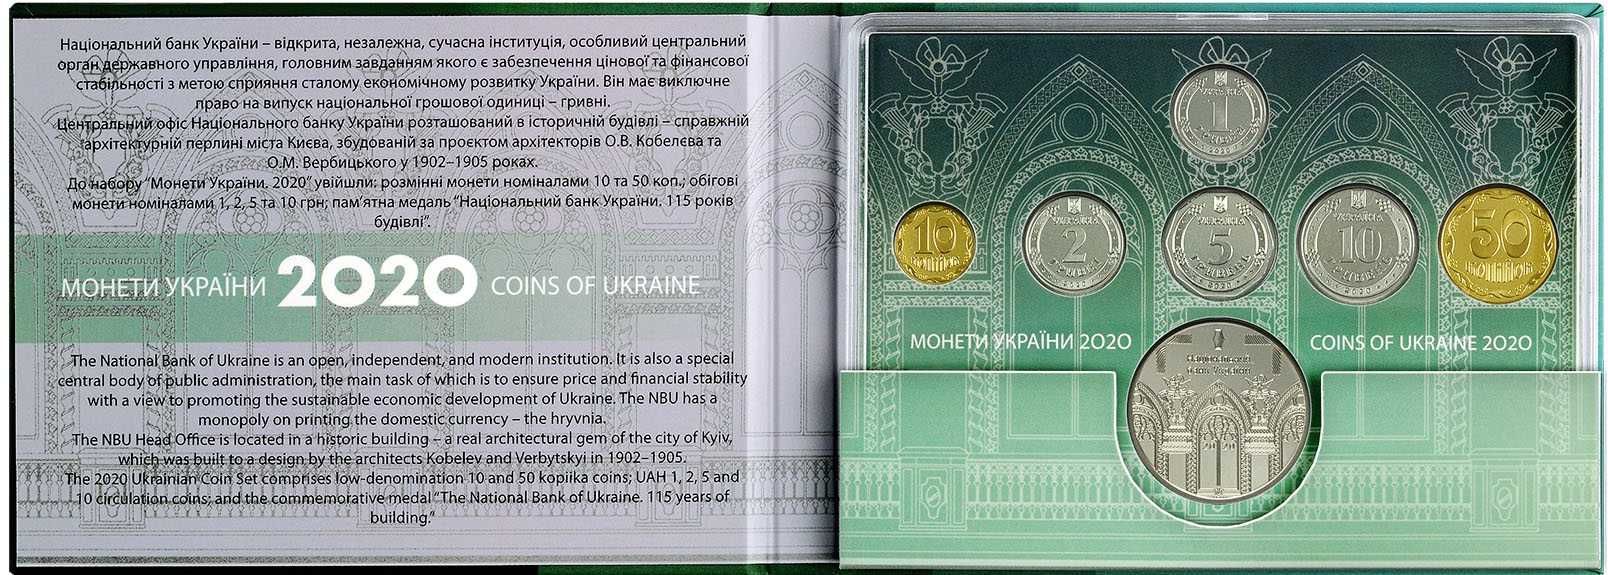 Набір обігових монет України 2020 рік